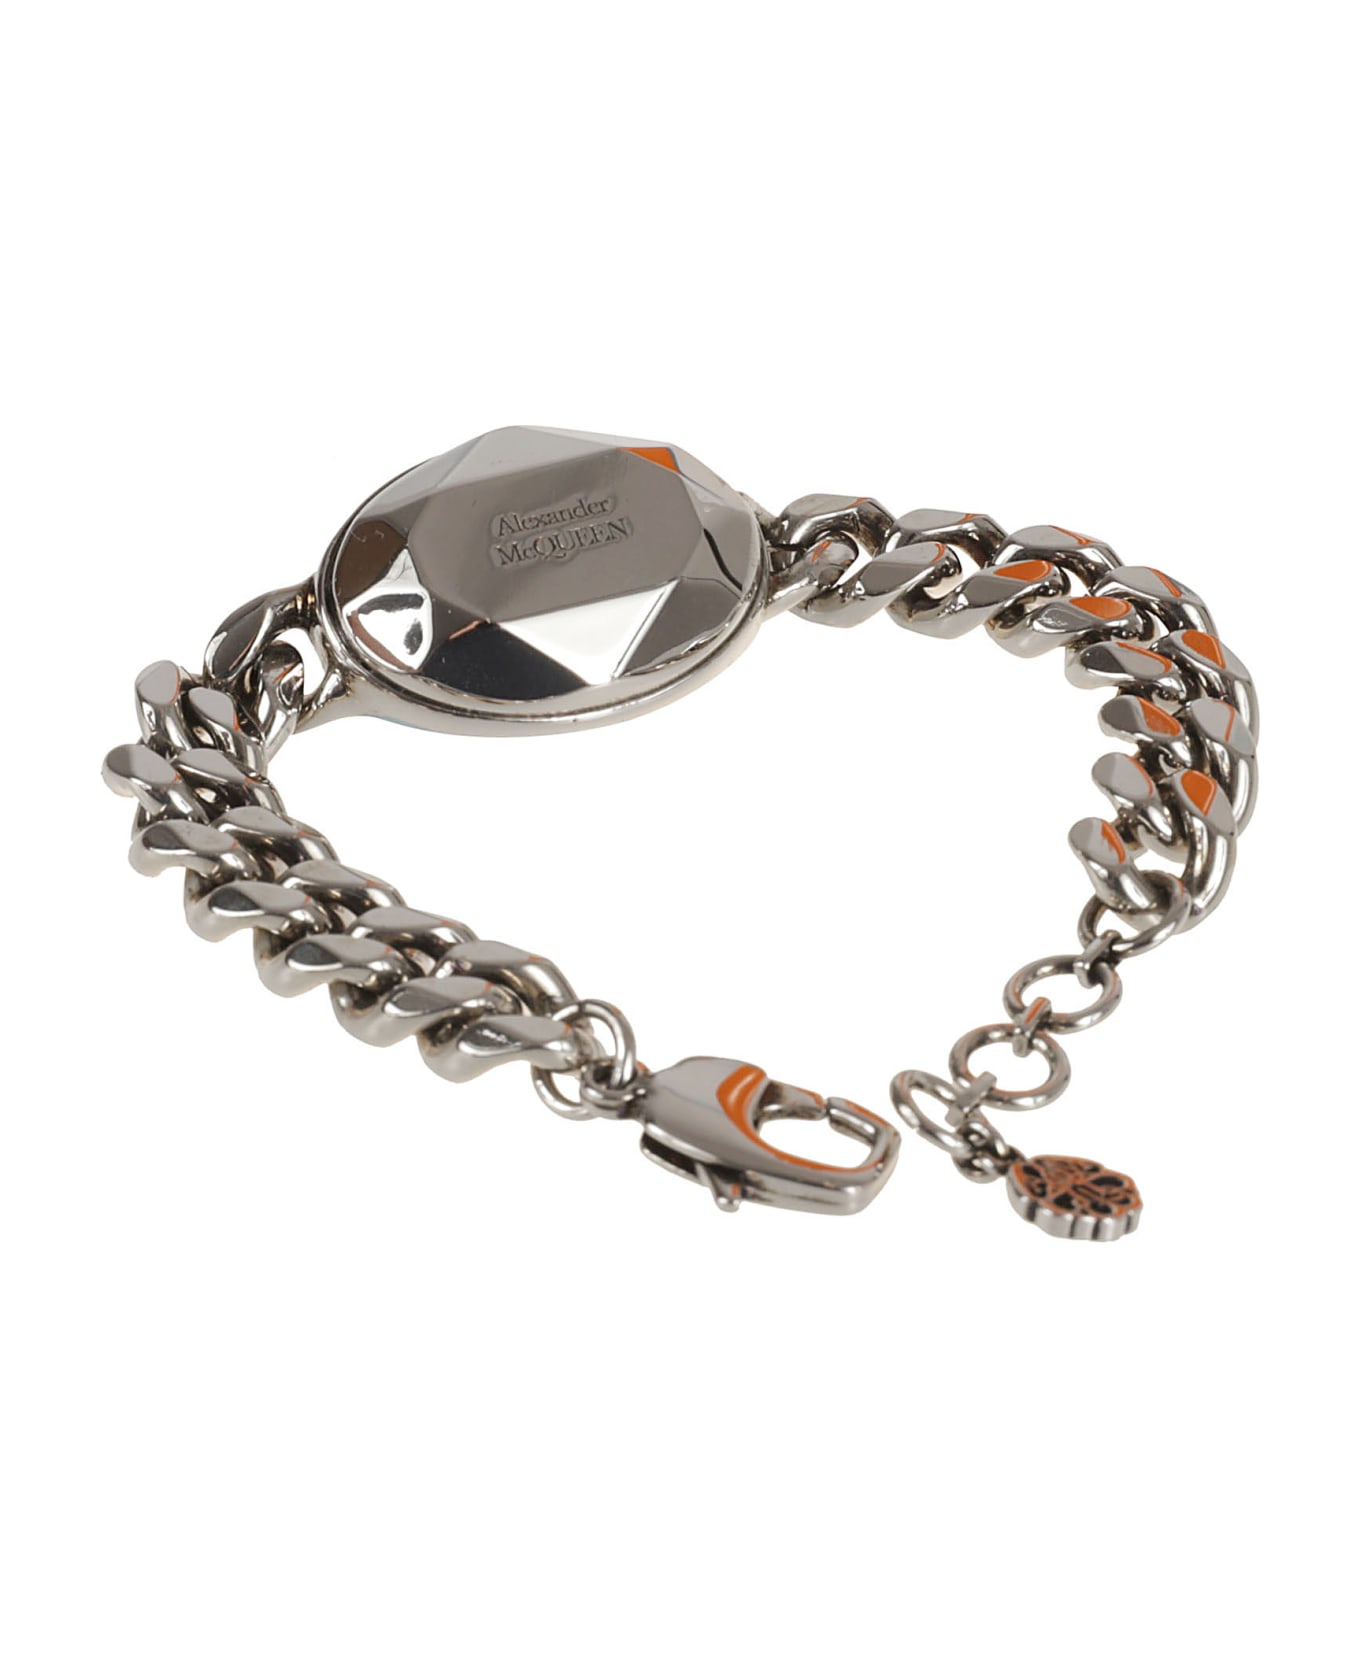 Alexander McQueen Facet Chain Bracelet - Antique Silver